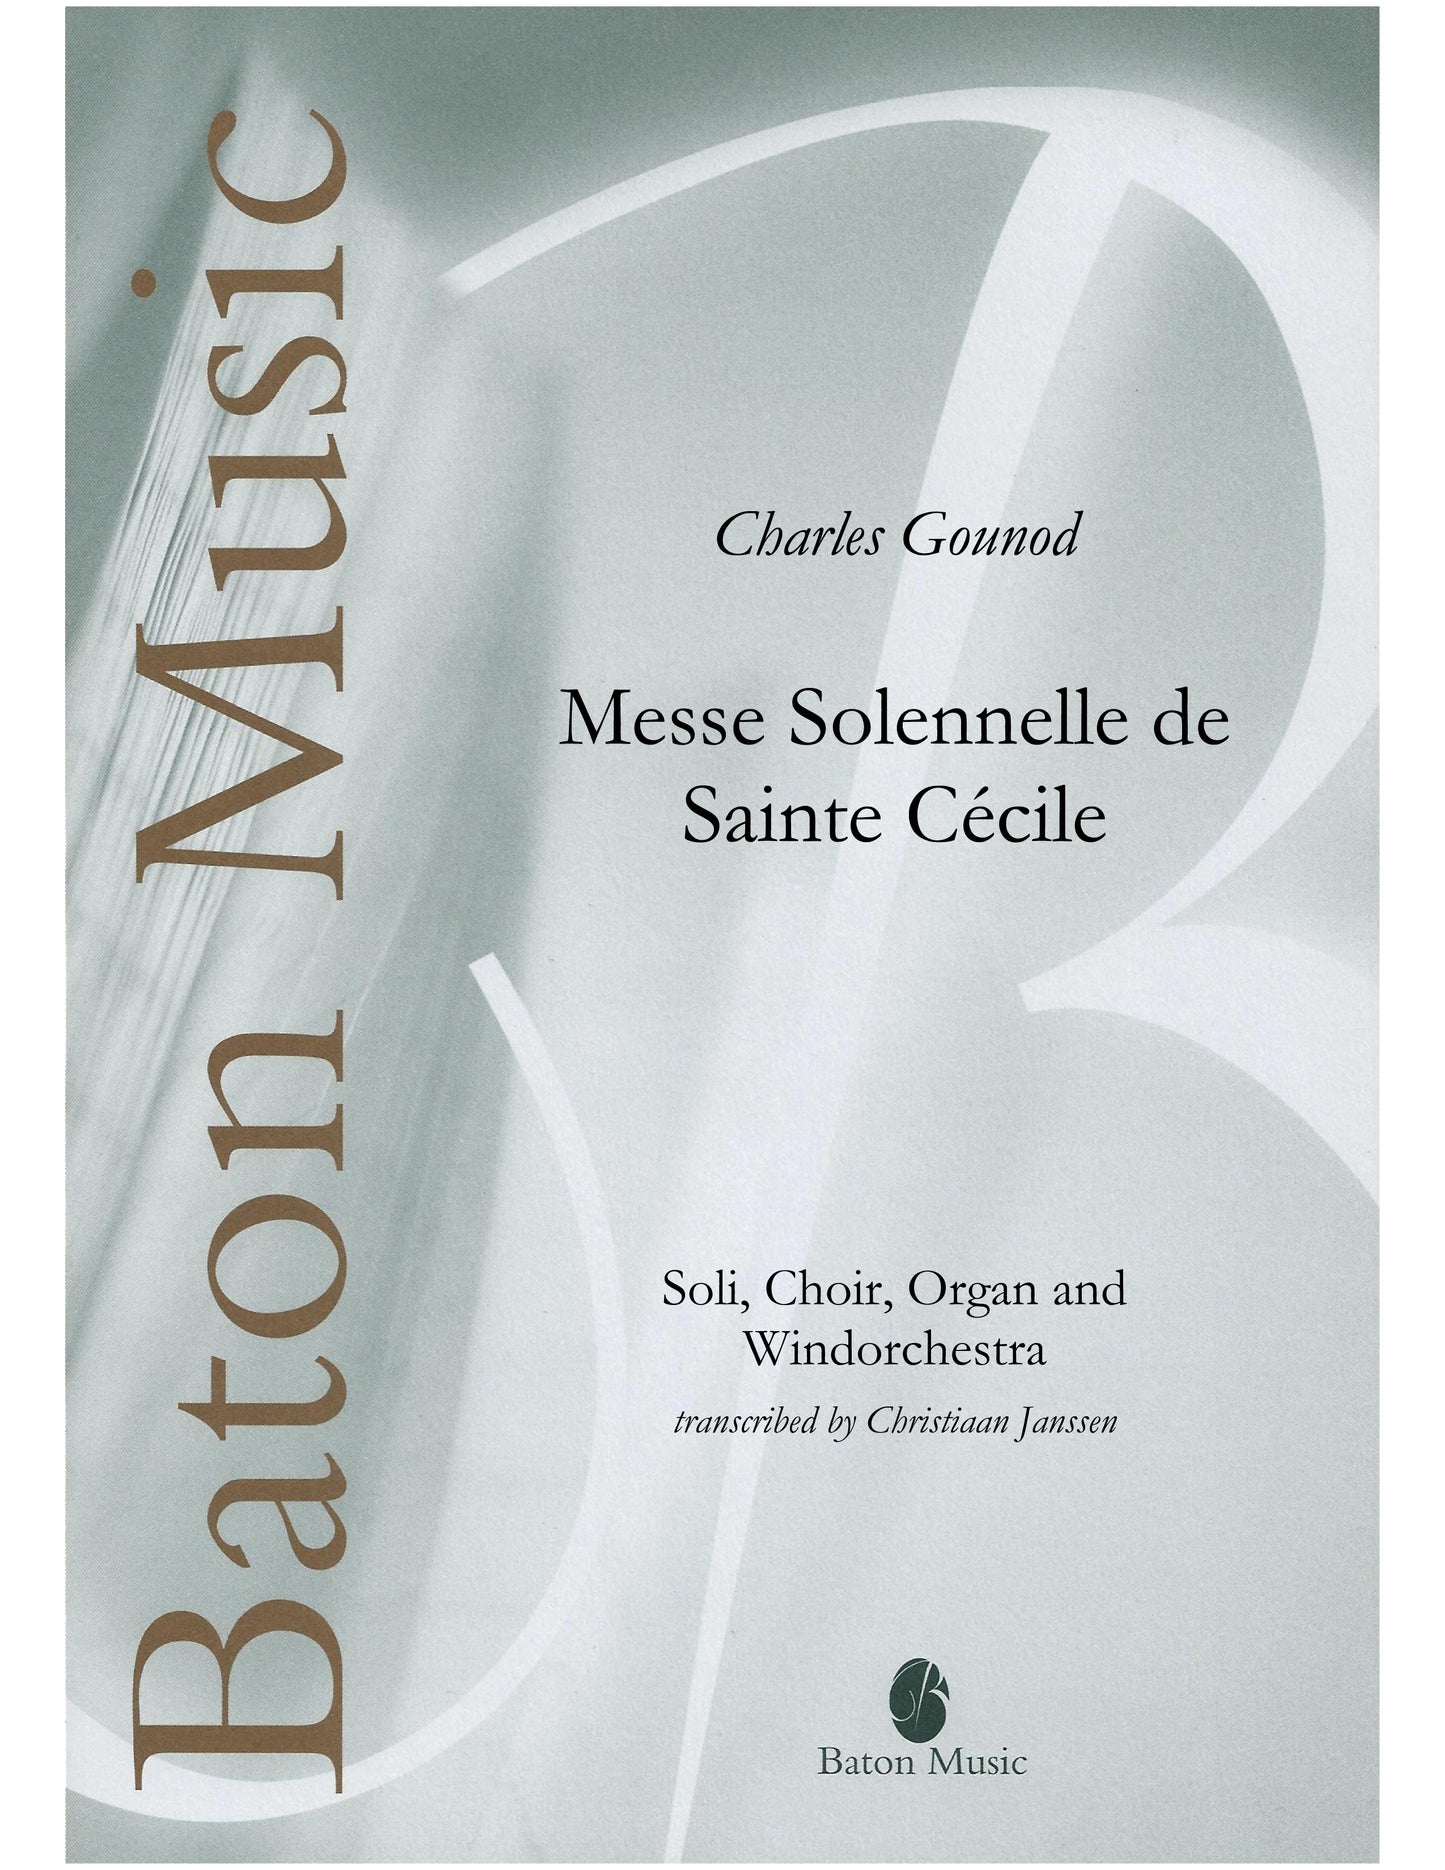 Messe Solennelle de Sainte Cécile - C. Gounod